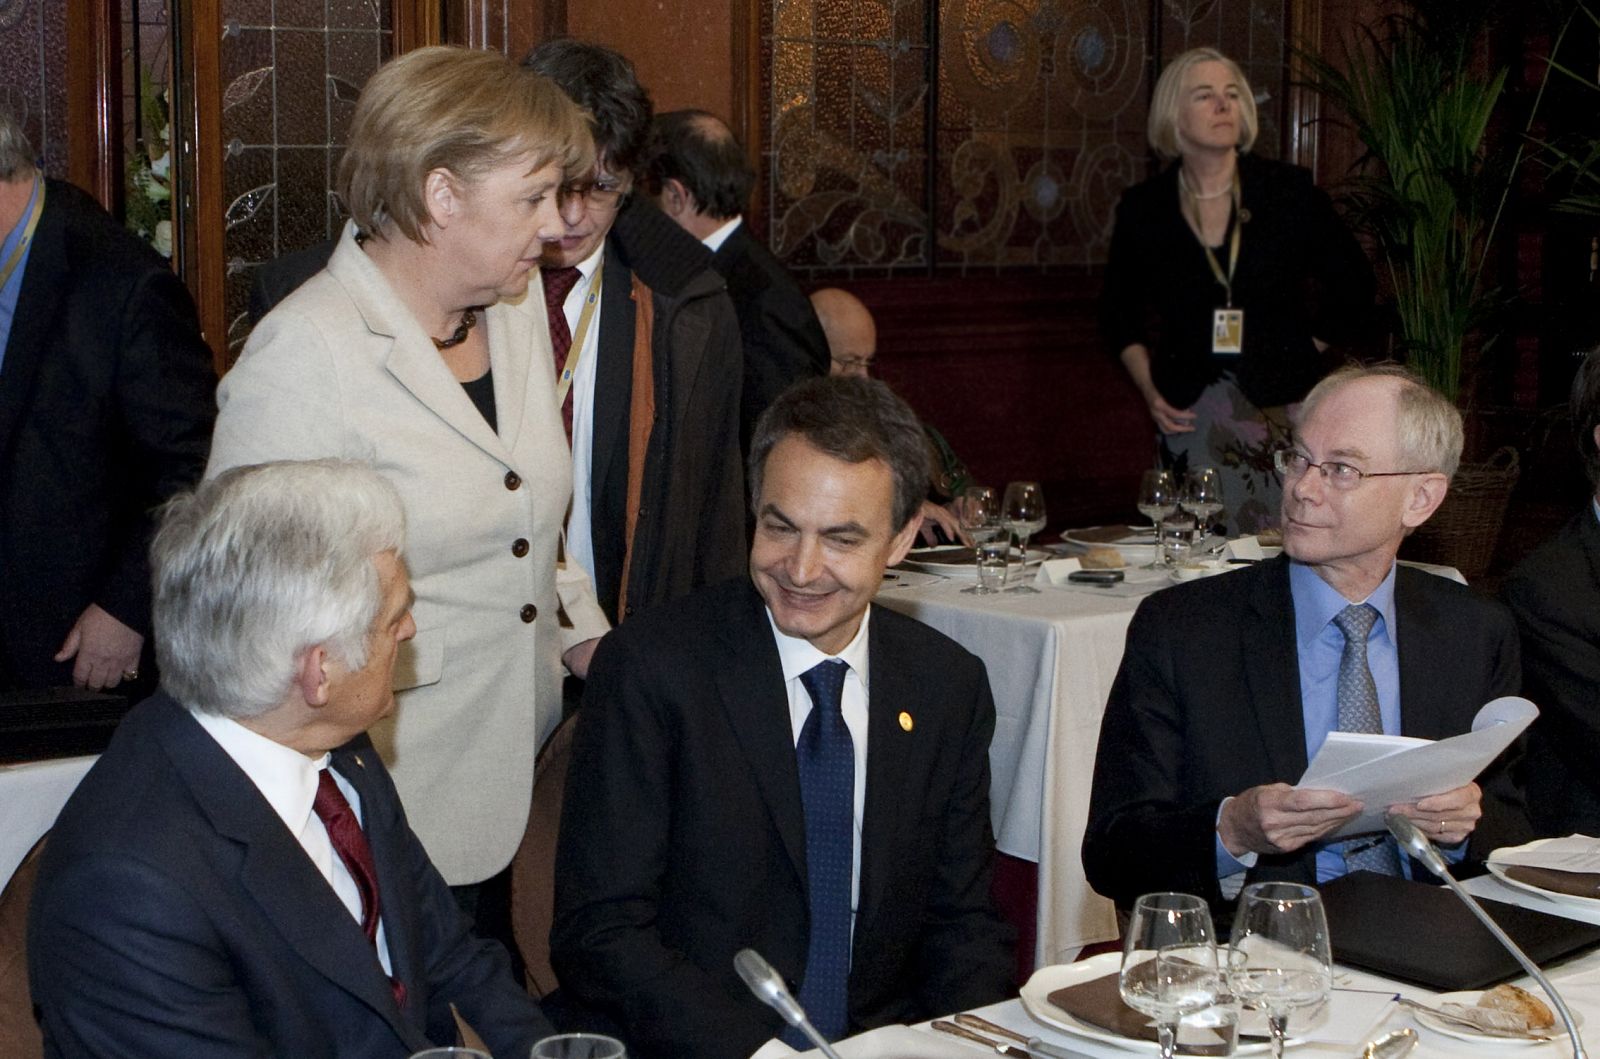 El presidente del Consejo, Herman Rompuy, el presidente del Gobierno, Rodríguez Zapatero, la canciller alemana, Angela Merkel y el presidente de la Eurocámara, Jerzy Buzek durante la cena del último Consejo Europeo celebrado en Bruselas.